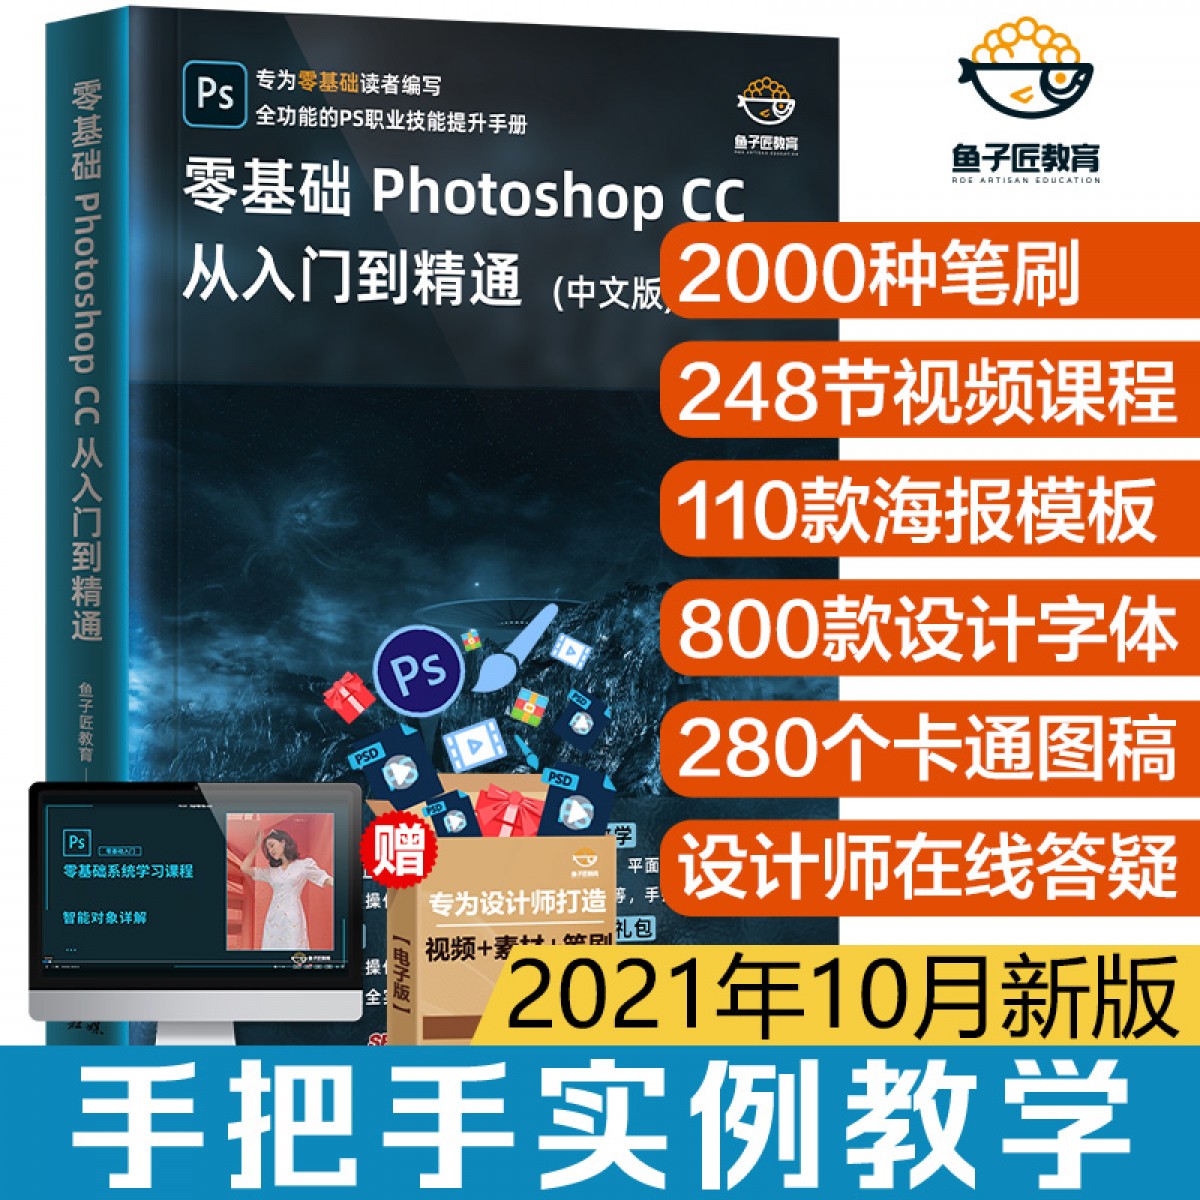 10月新版ps教程书籍Photoshop2021正版CC 零基础自学教程书从入门到精通图像处理调色平面设计adobe软件视频书课包淘宝美工PS教材